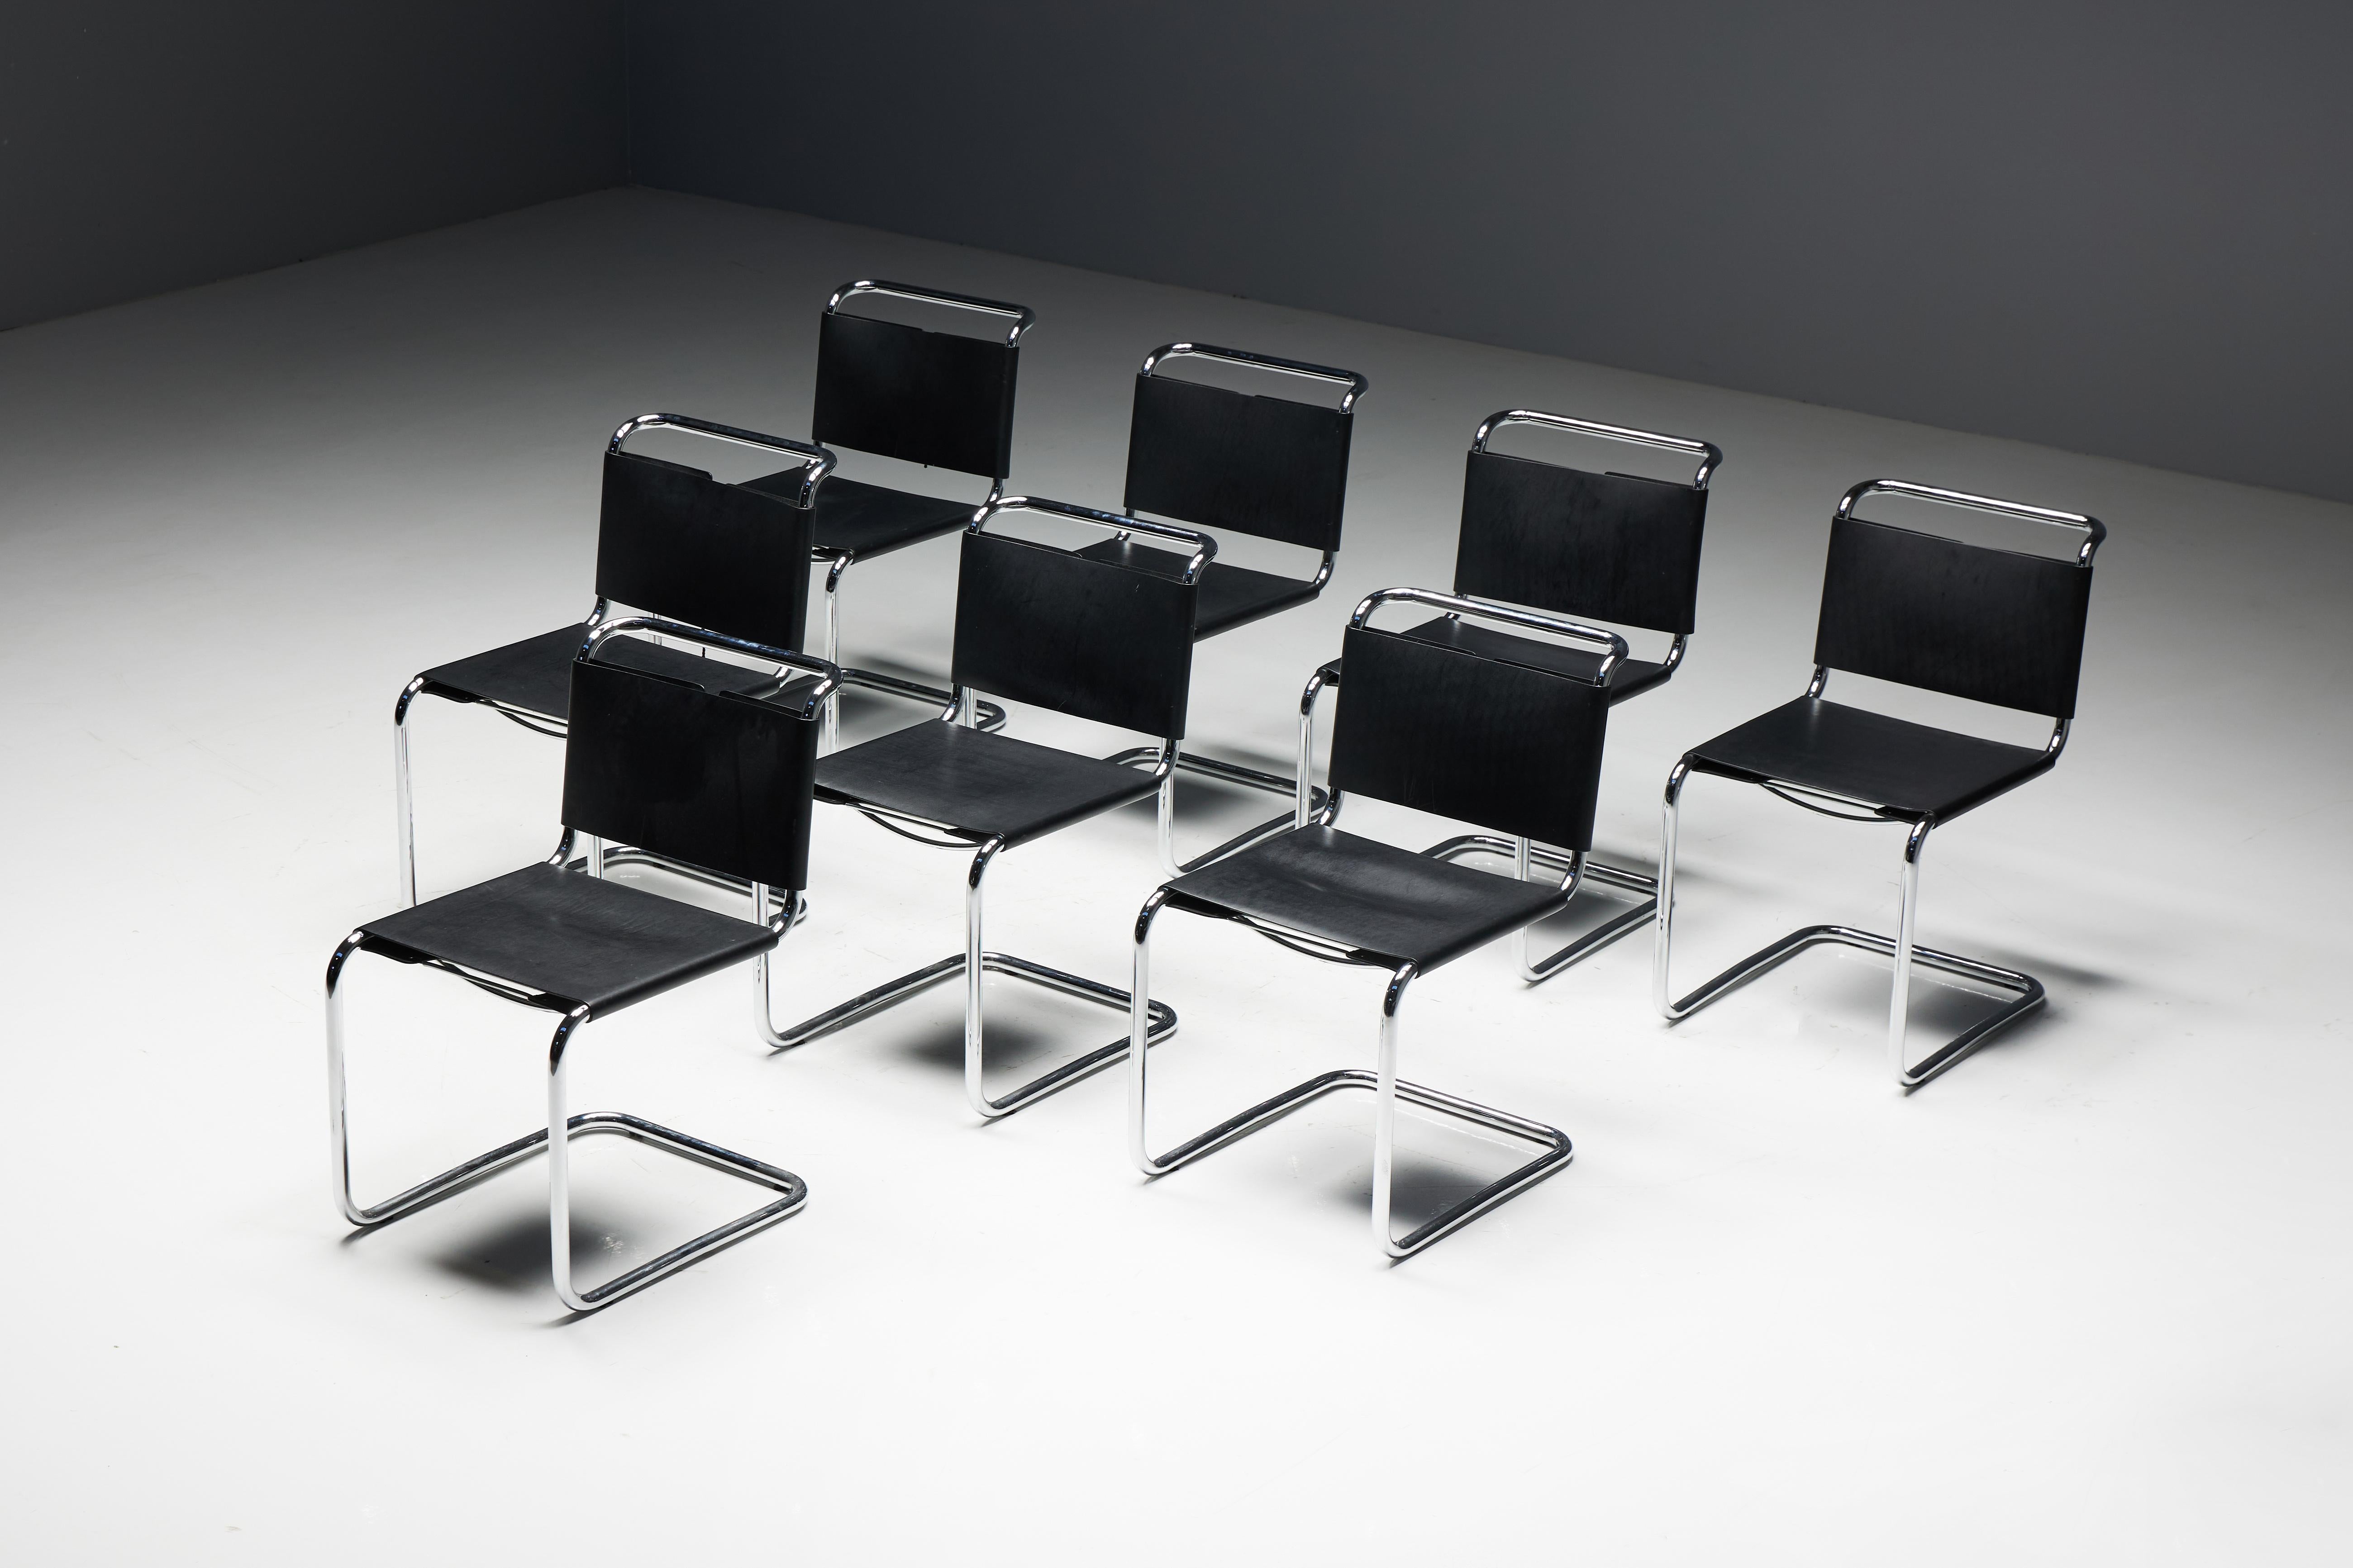 La chaise Spoleto, créée par Ufficio Tecnico pour Knoll, est une pièce intemporelle du design moderne. Ces chaises sont dotées d'une assise en cuir noir et d'une structure en chrome poli. Les dossiers à lacets offrent non seulement confort et